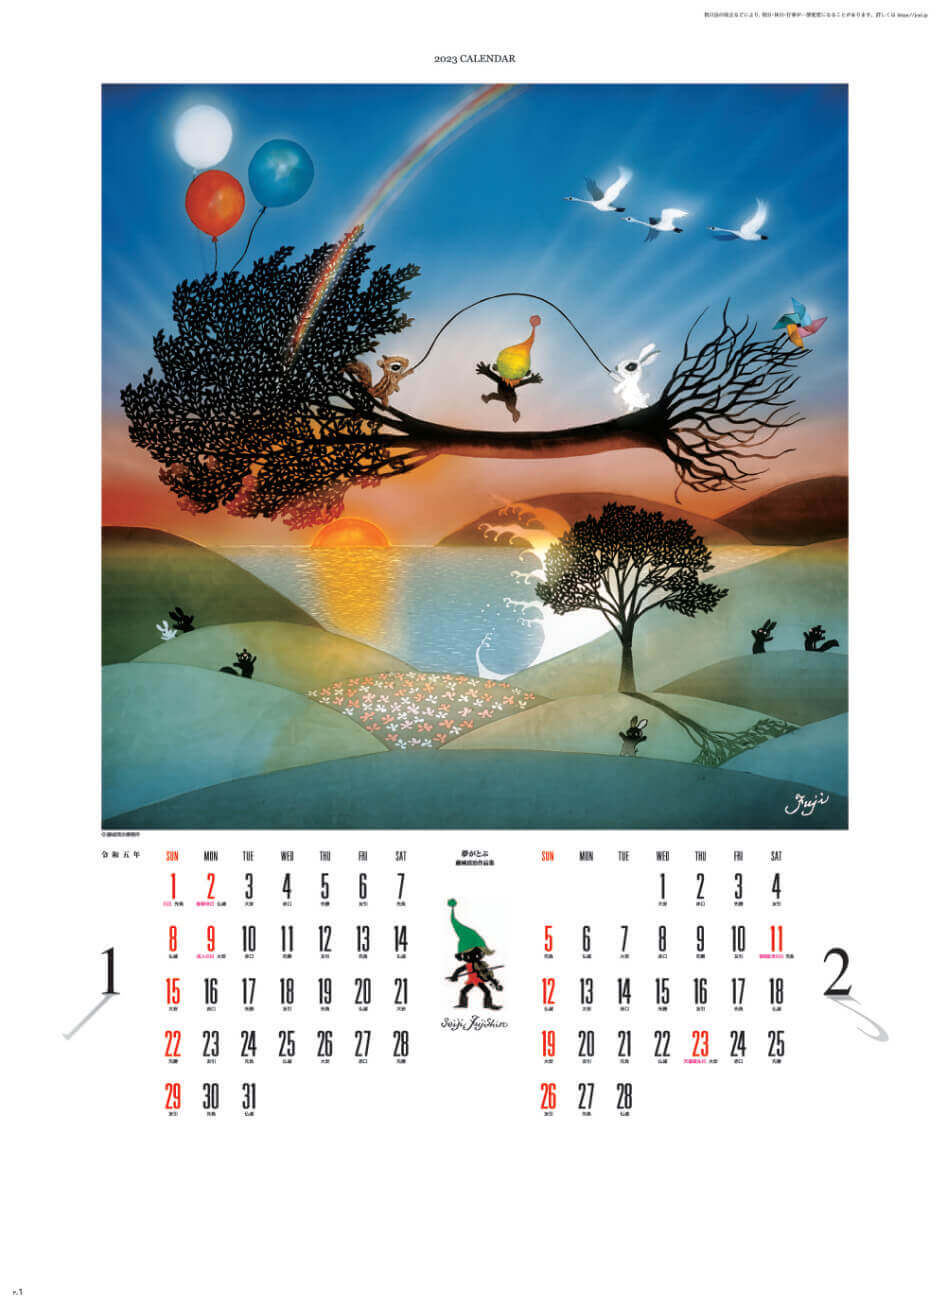 1/2月 夢がとぶ 遠い日の風景から(影絵) 藤城清治 2023年カレンダーの画像